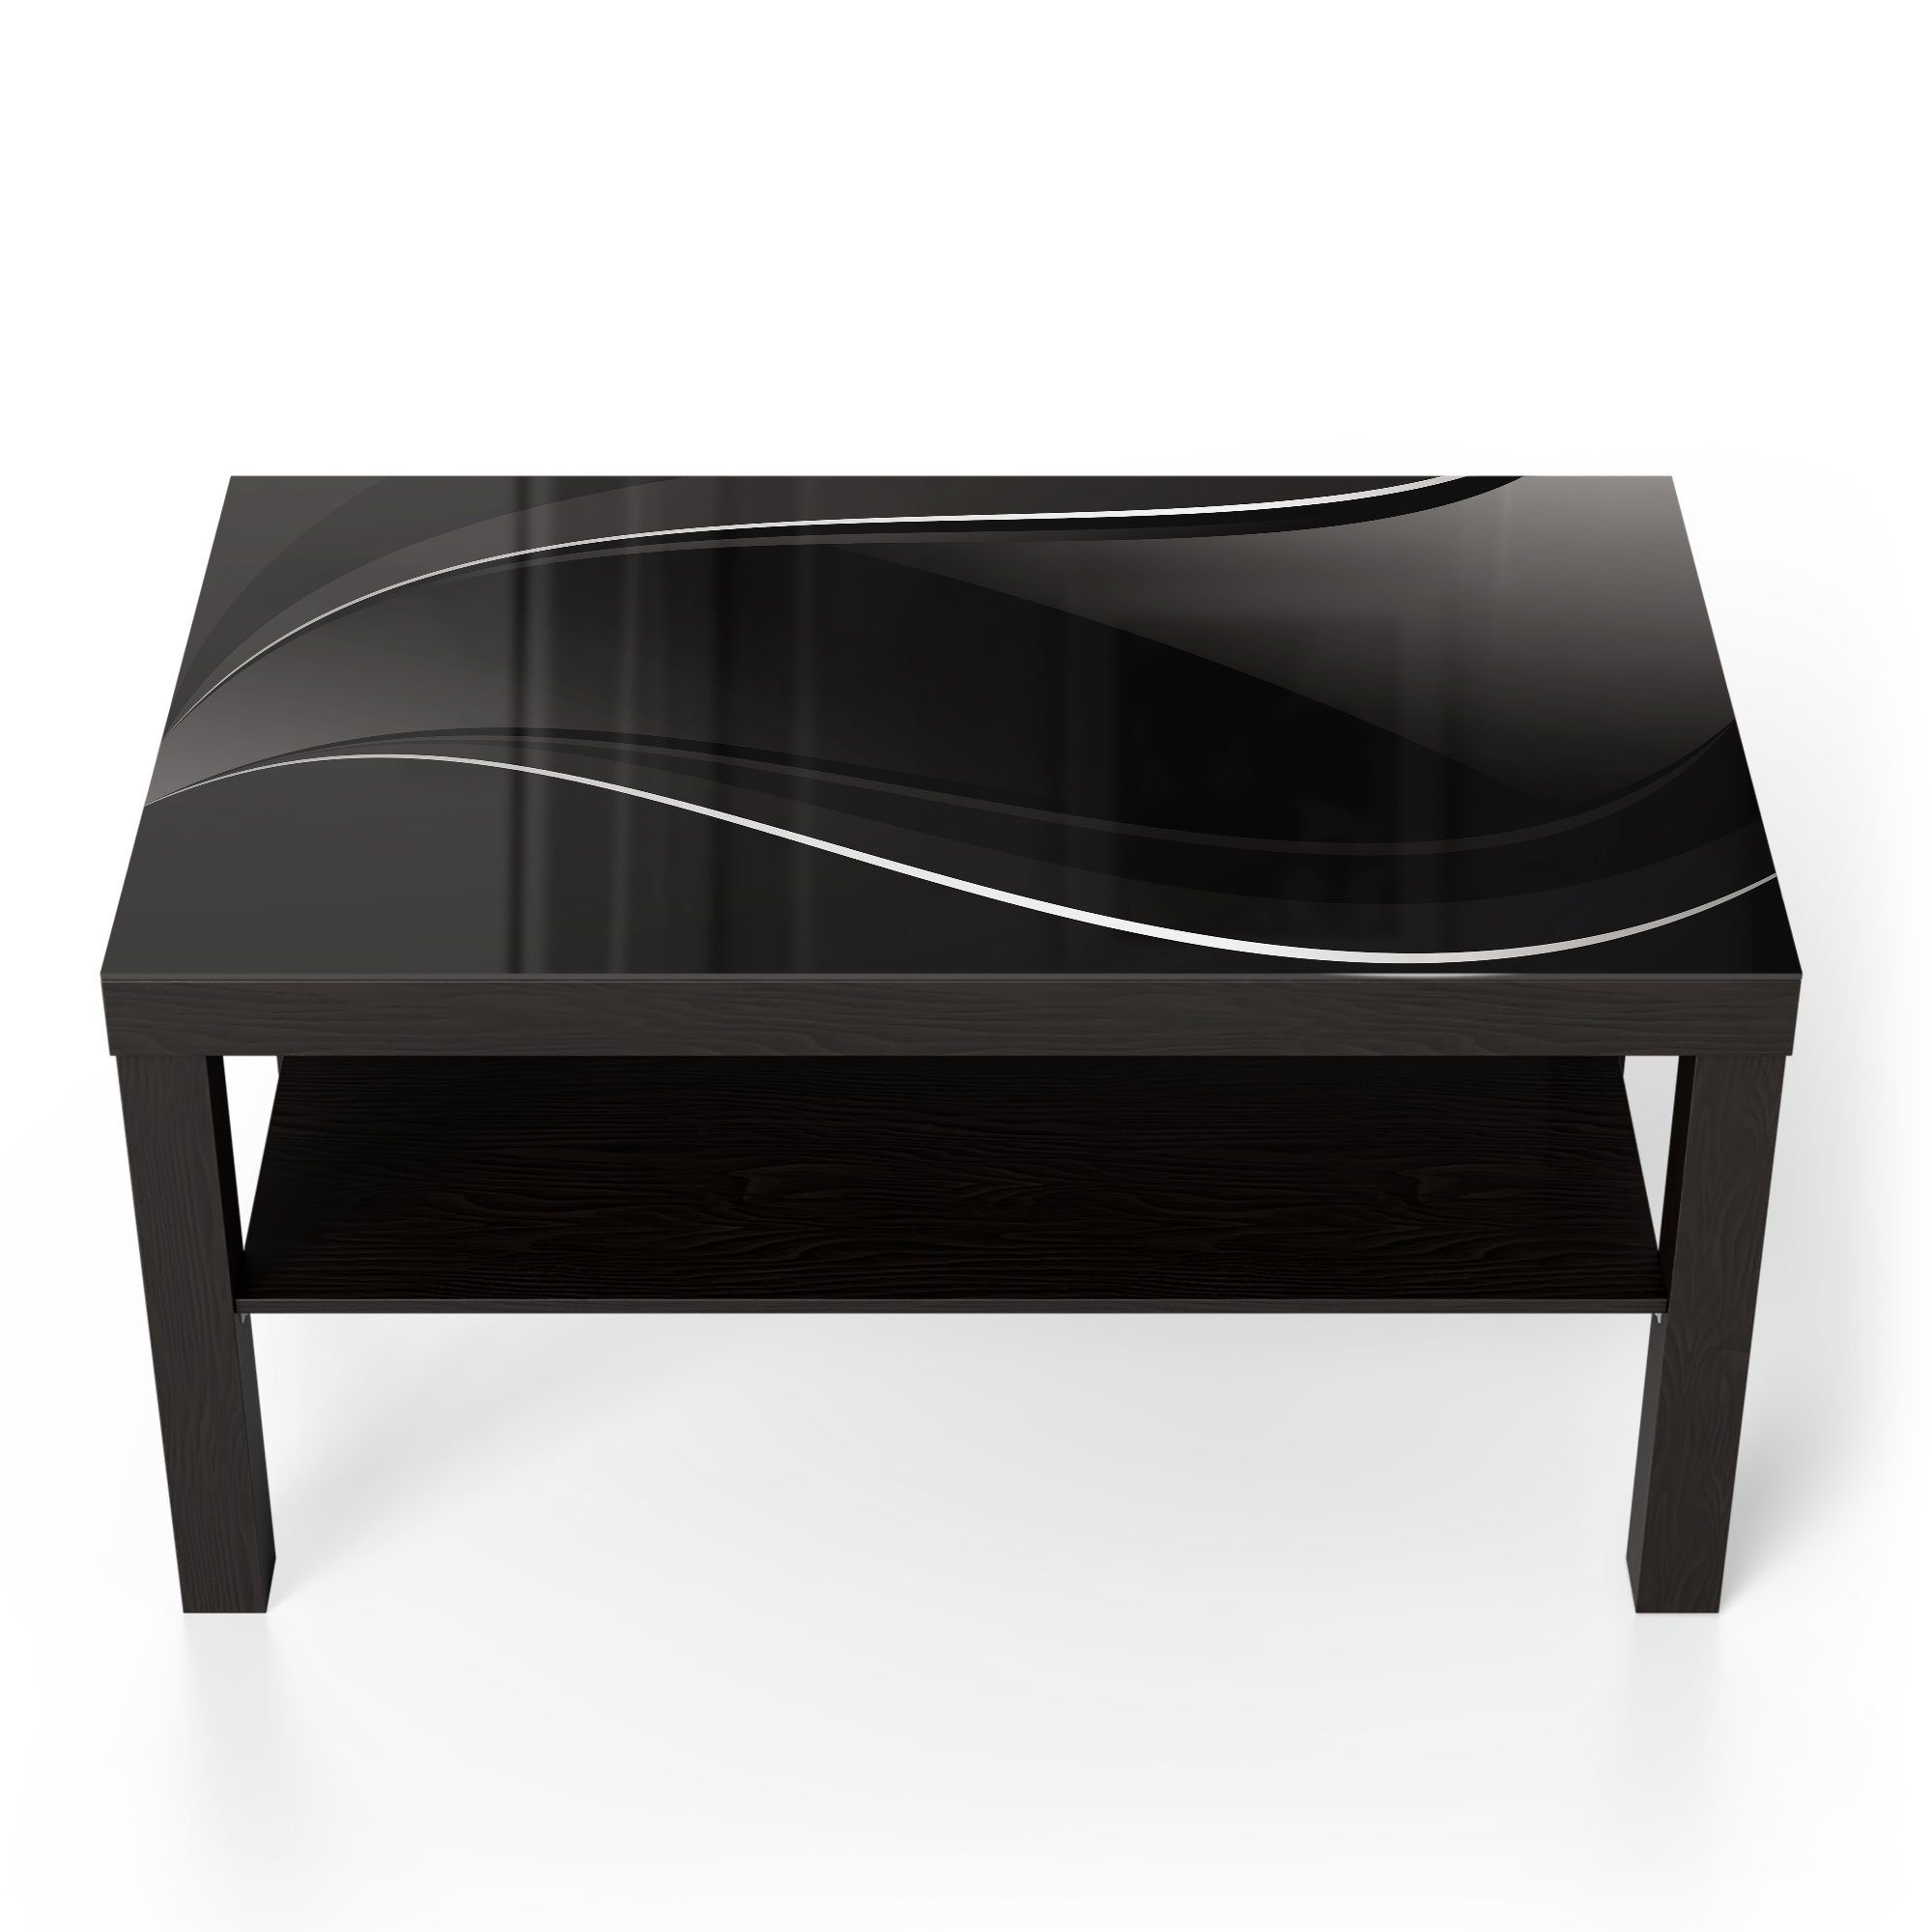 'Dunkle Schwarz Glas DEQORI Wellengrafik', Beistelltisch Couchtisch Glastisch modern